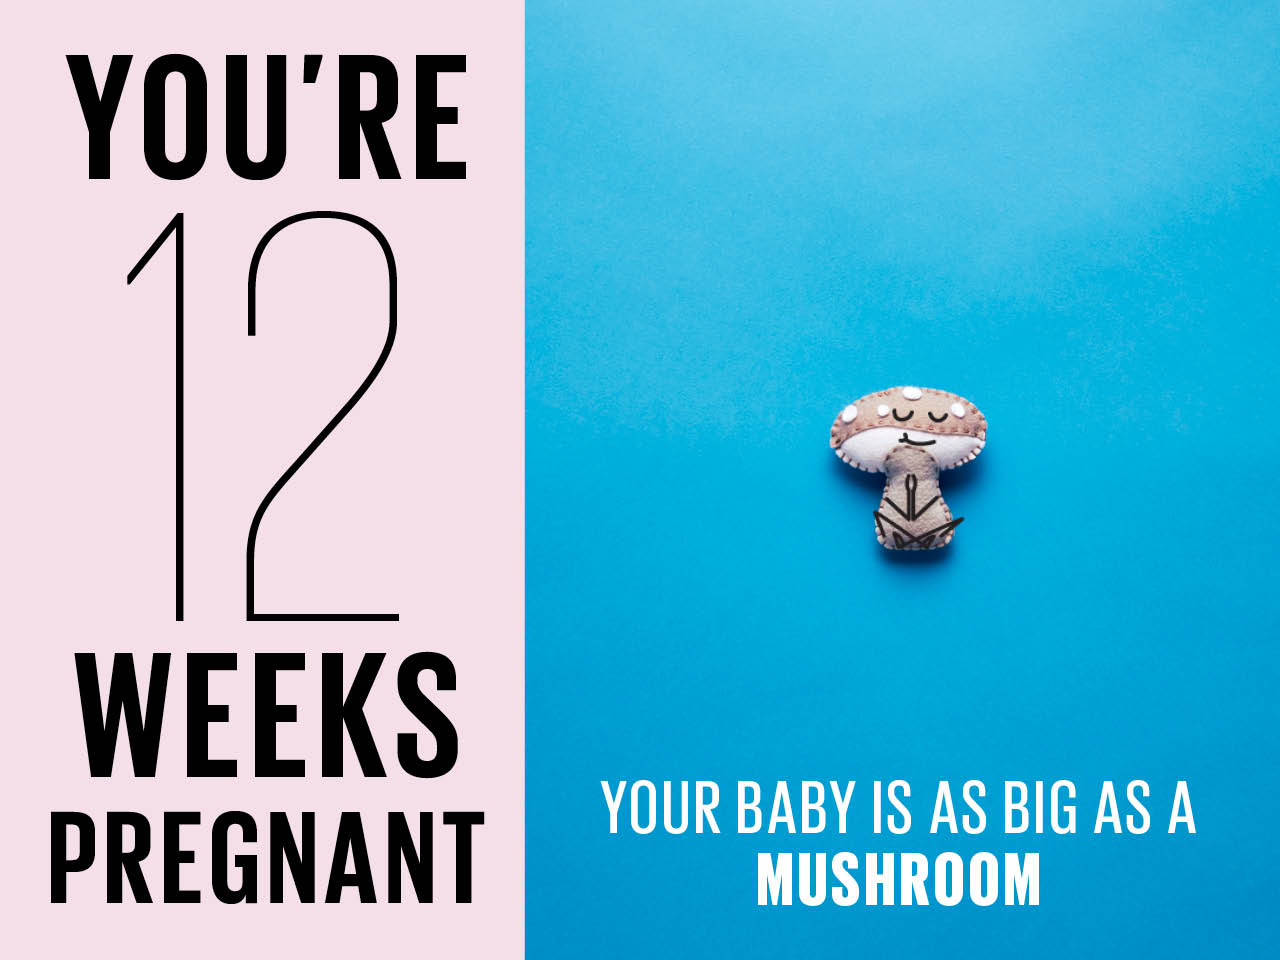 Kích thước thai nhi 12 tuần tuổi to như 1 cây nấm